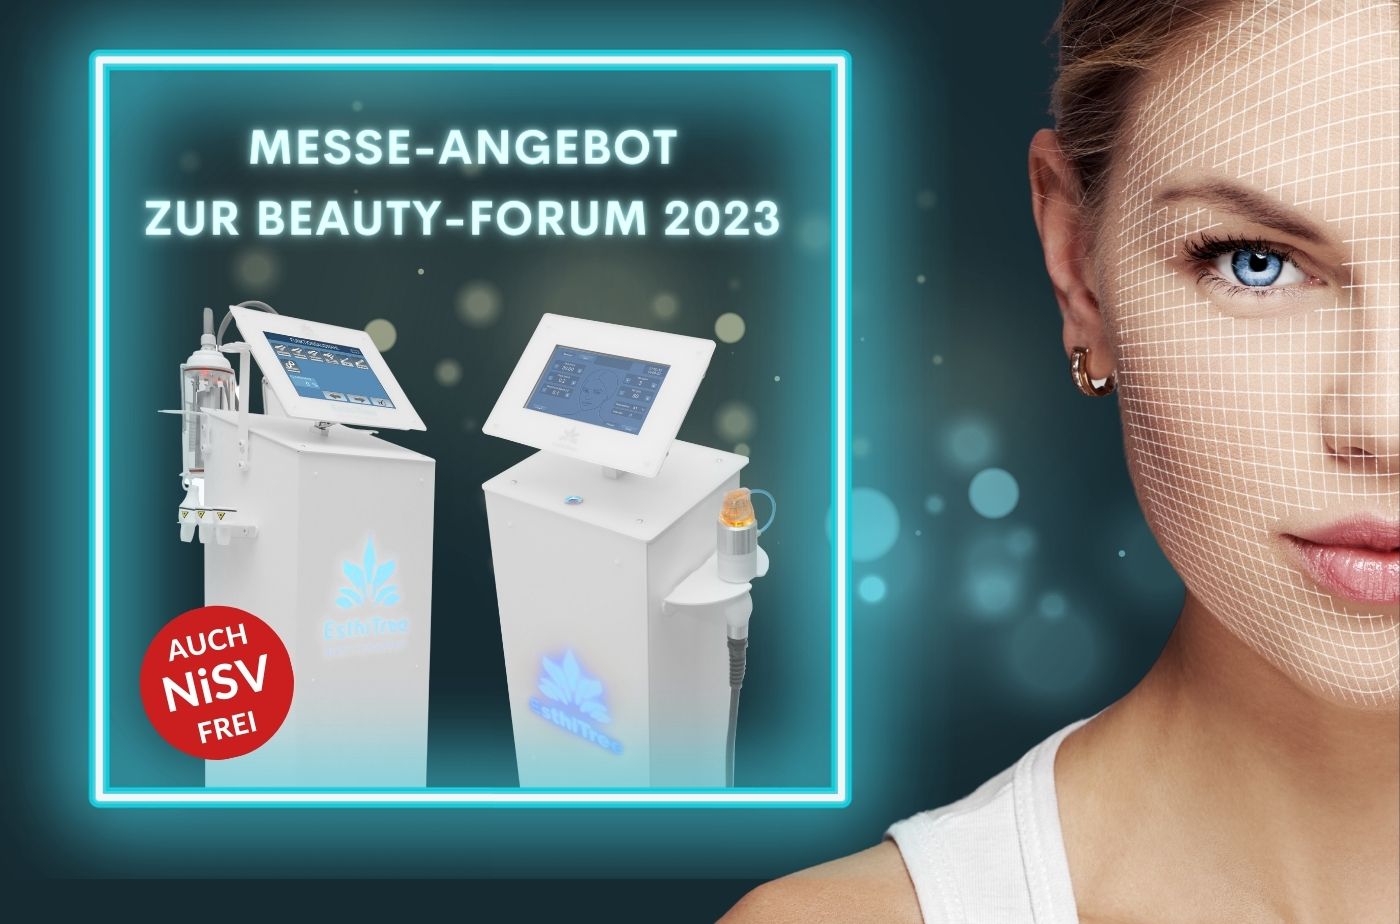 Angebot zur Beauty Forum 2023